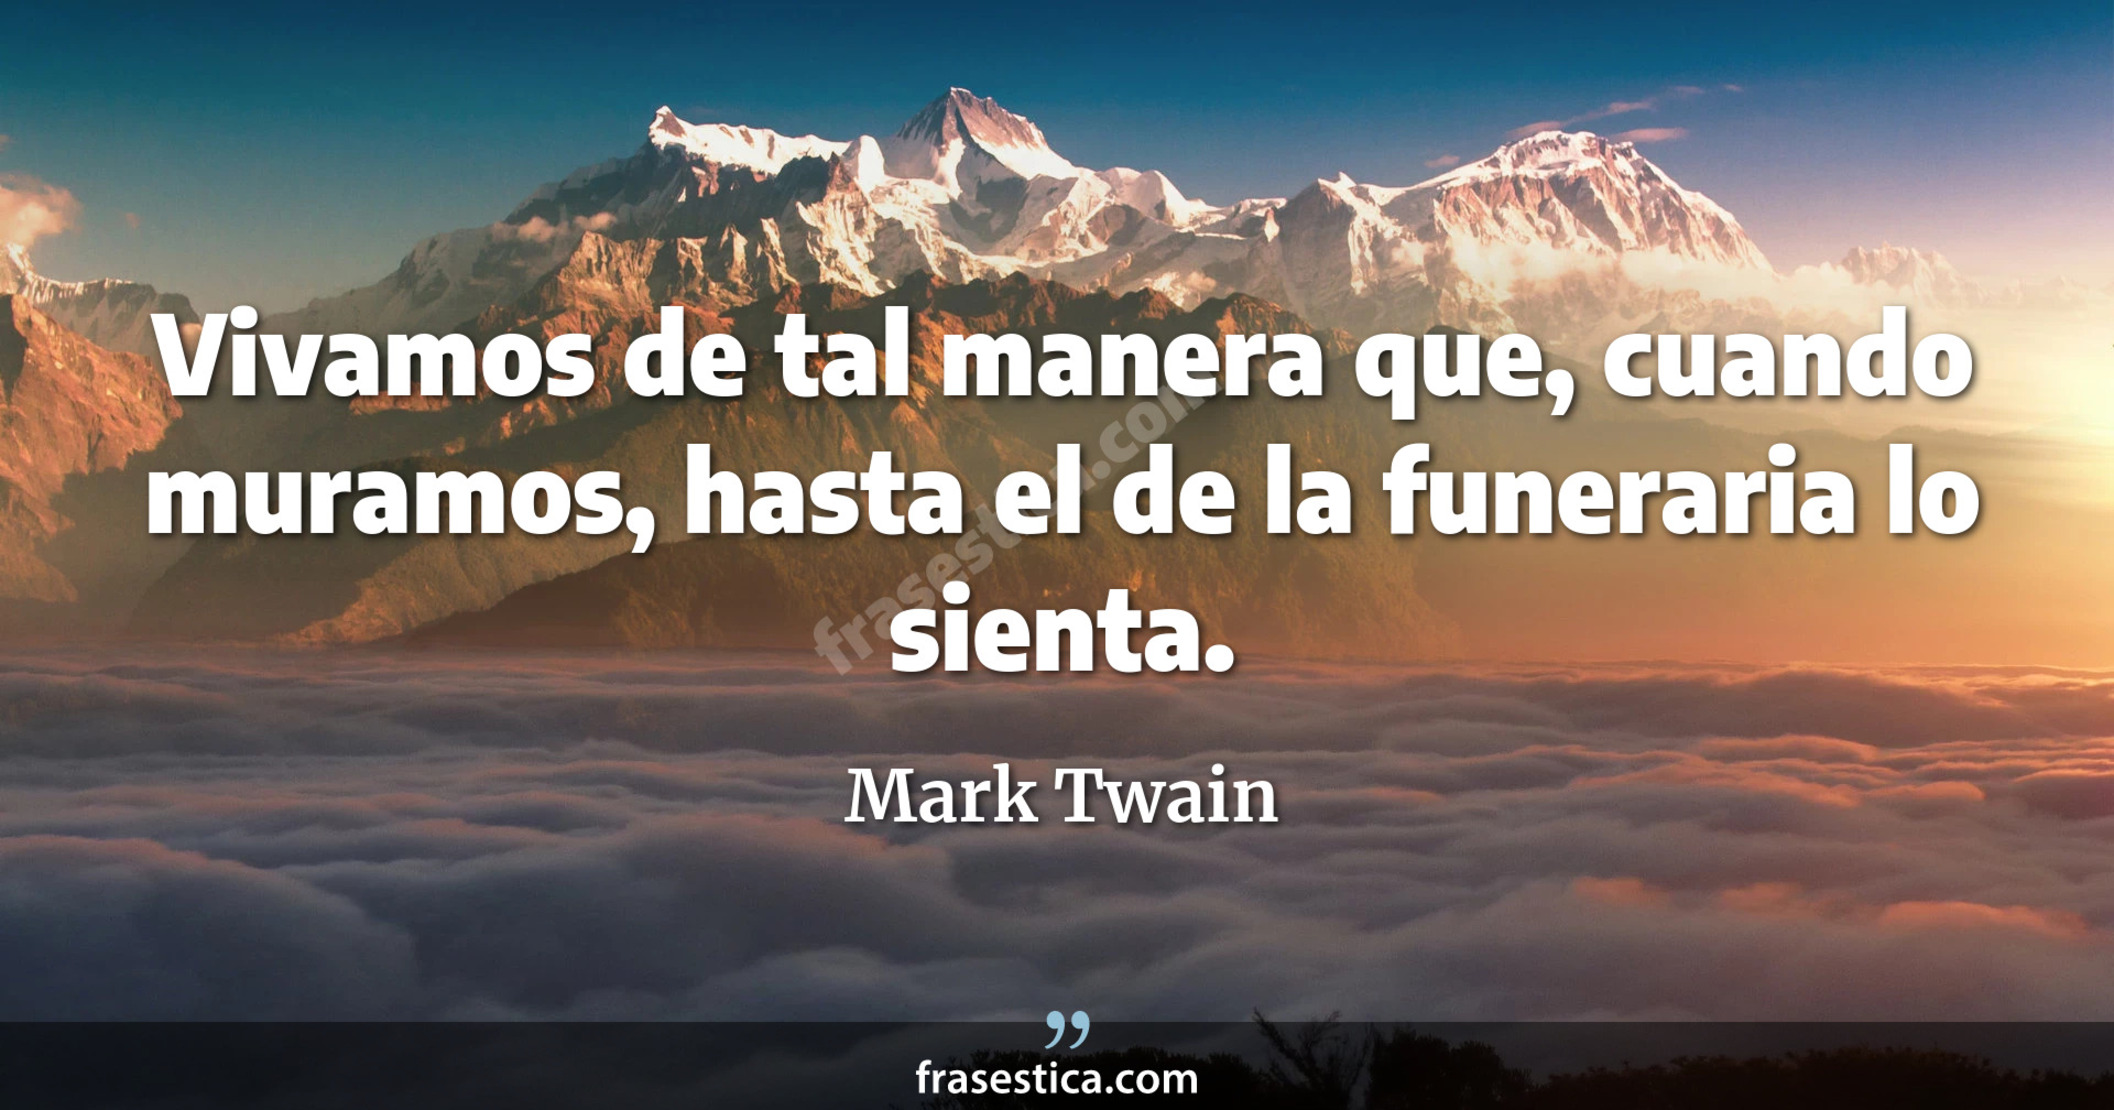 Vivamos de tal manera que, cuando muramos, hasta el de la funeraria lo sienta. - Mark Twain